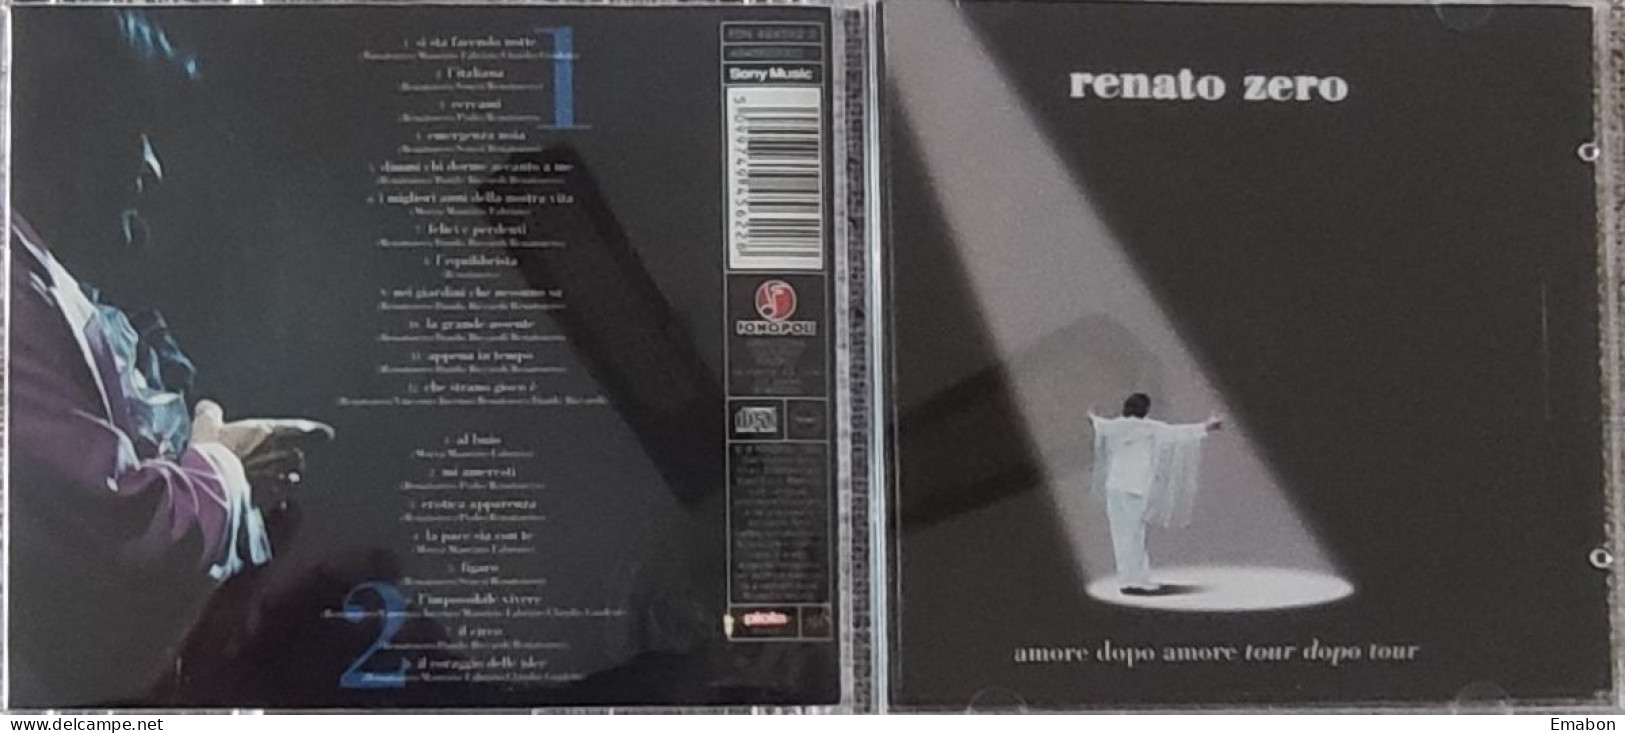 BORGATTA - 2 Cd RENATO ZERO - AMORE DOPO AMORE TOUR DOPO TOUR - FONOPOLI 1999  -  USATO In Buono Stato - Autres - Musique Italienne